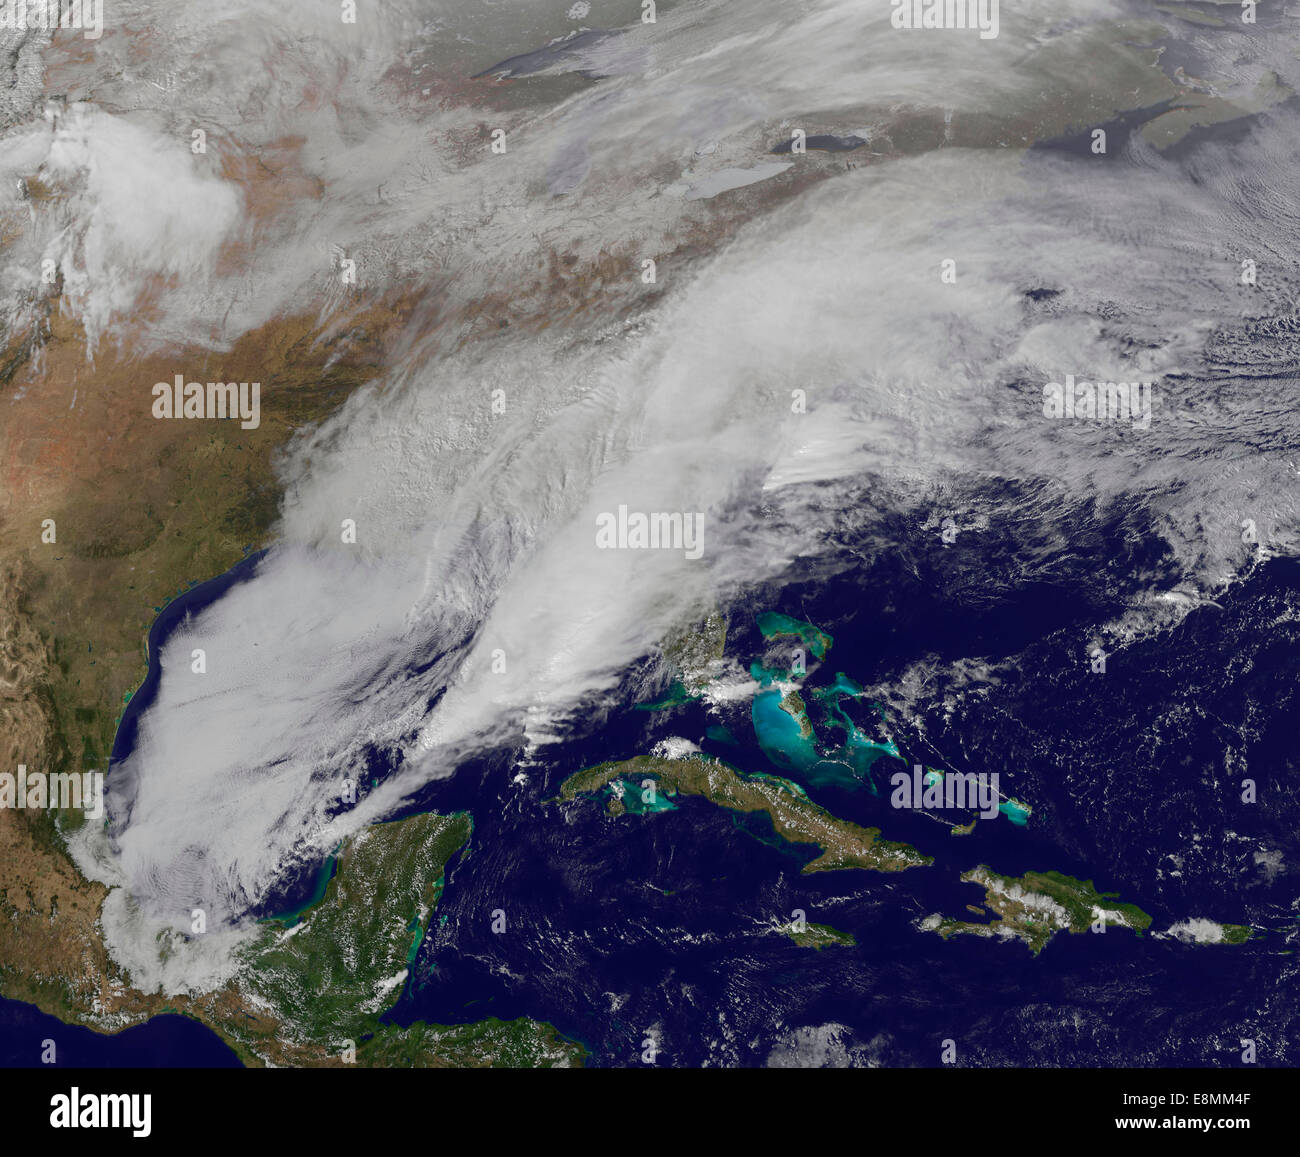 12 février 2014 - vue d'une tempête hivernale sur les États-Unis au sud et la côte est. Surface couverte de neige peut être voir Banque D'Images